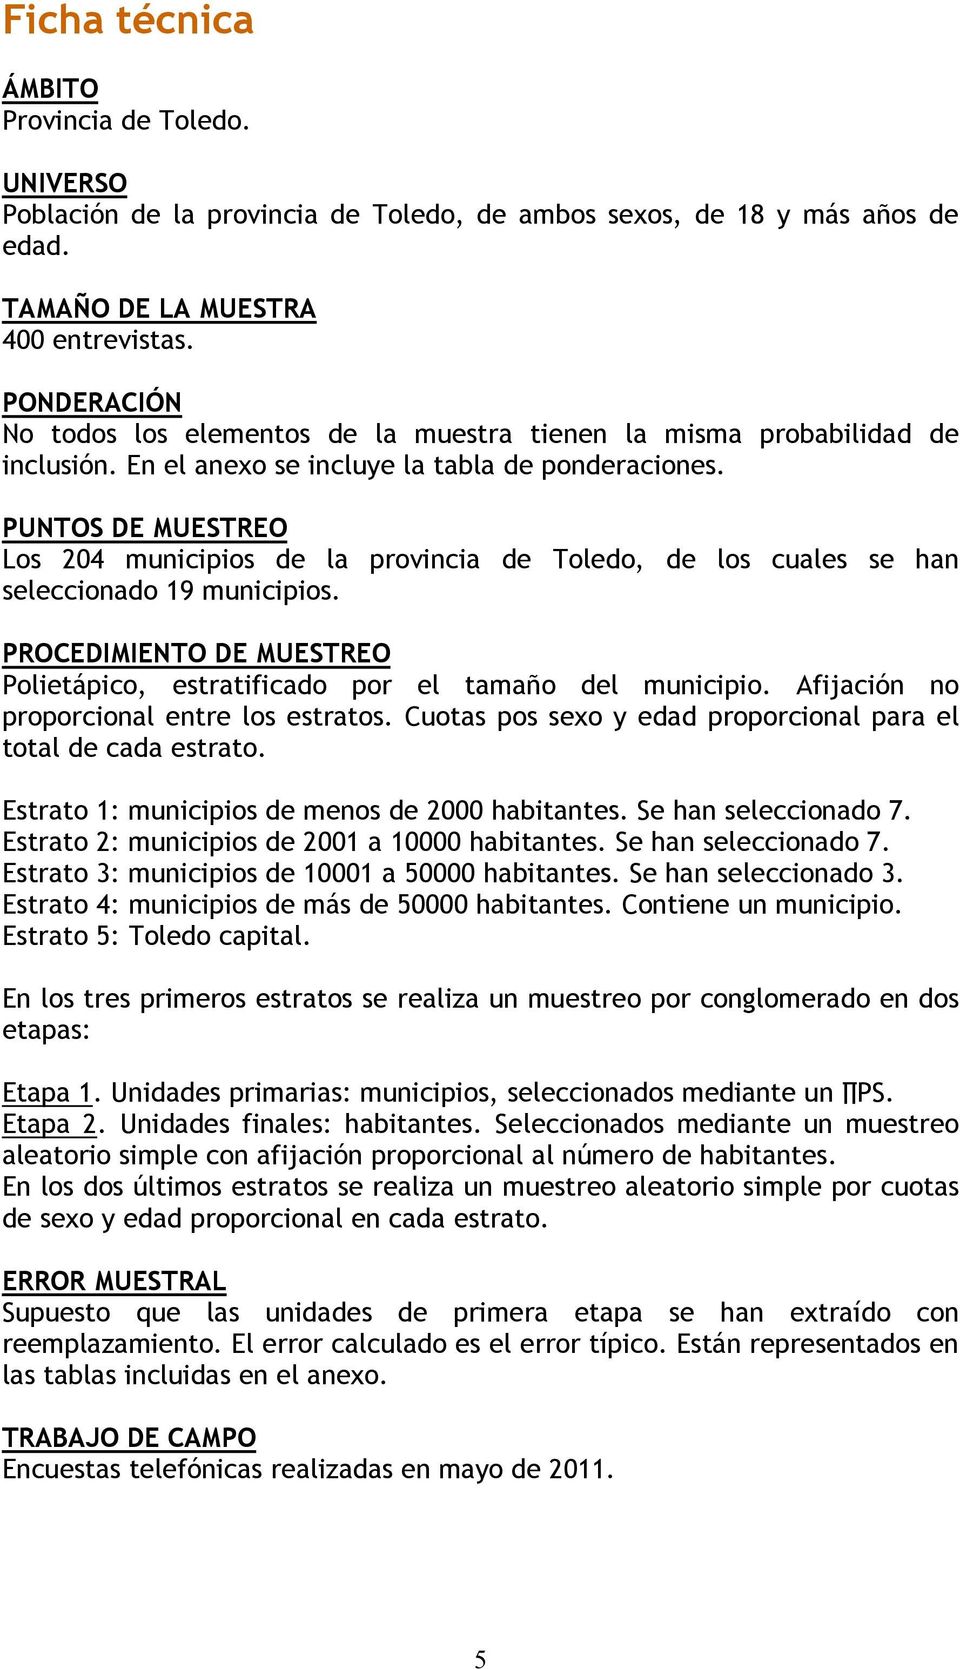 PUNTOS DE MUESTREO Los 204 municipios de la provincia de Toledo, de los cuales se han seleccionado 19 municipios. PROCEDIMIENTO DE MUESTREO Polietápico, estratificado por el tamaño del municipio.